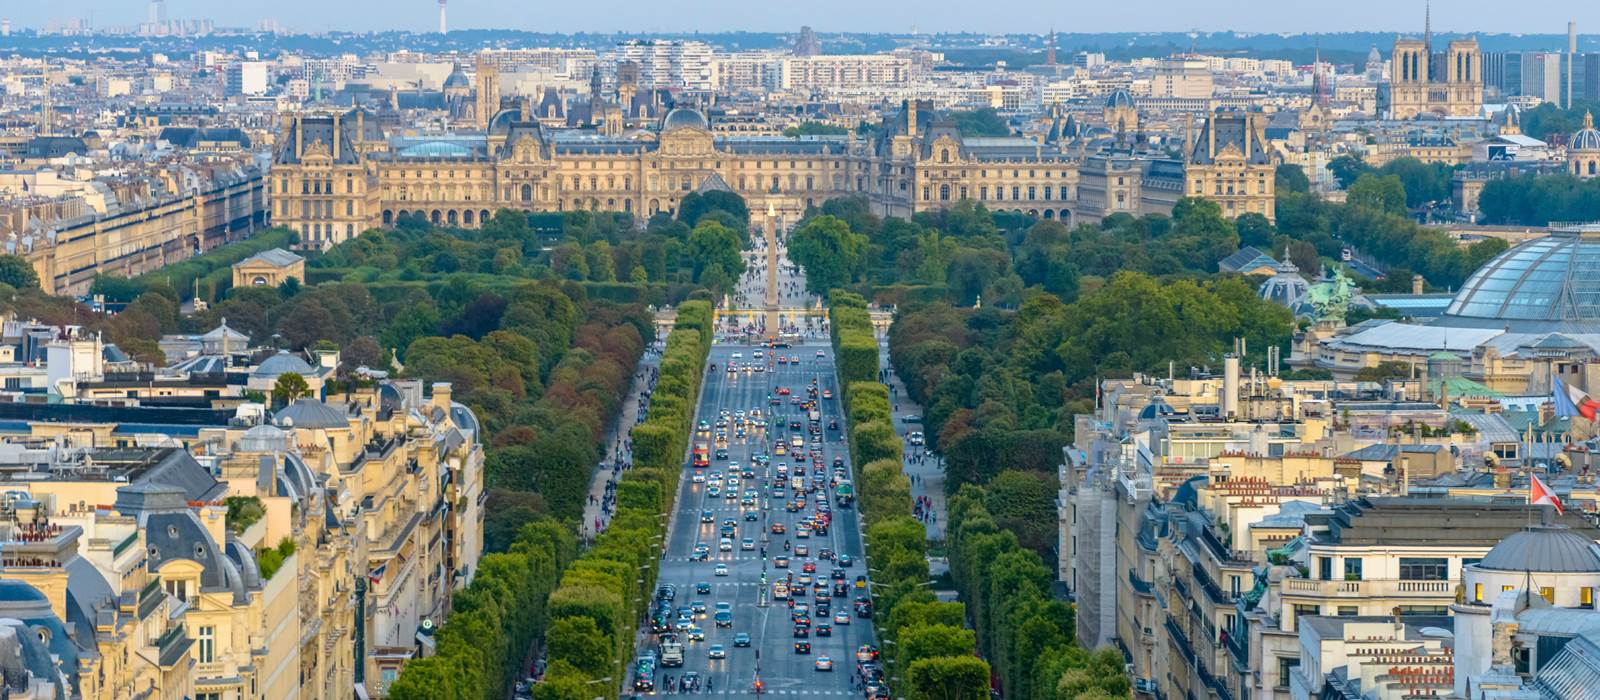 خیابان شانزلیزه در شهر پاریس از جاذبه های گردشگری فرانسه